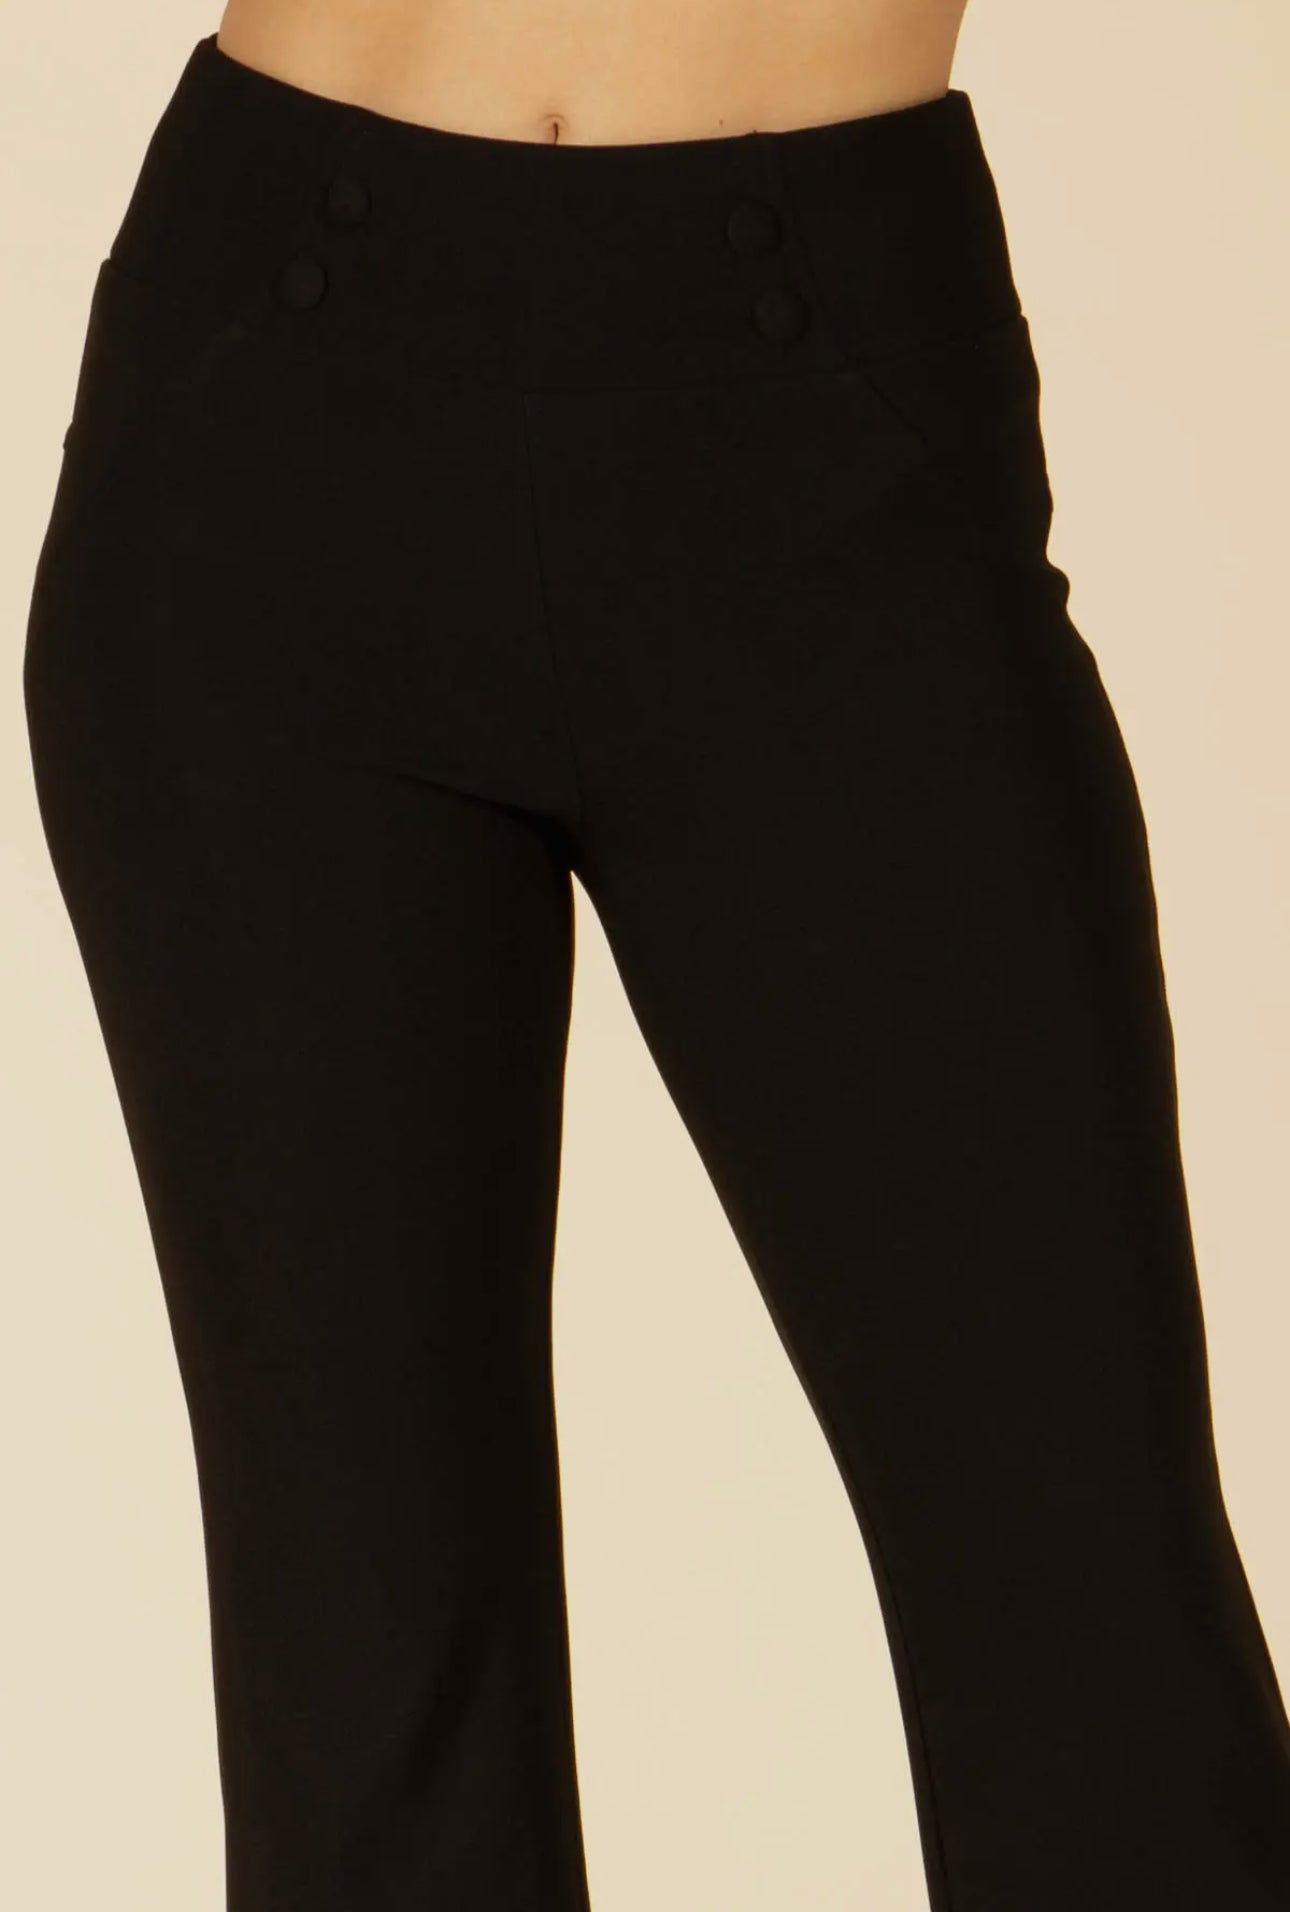 LIZA BLACK DRESS PANTS